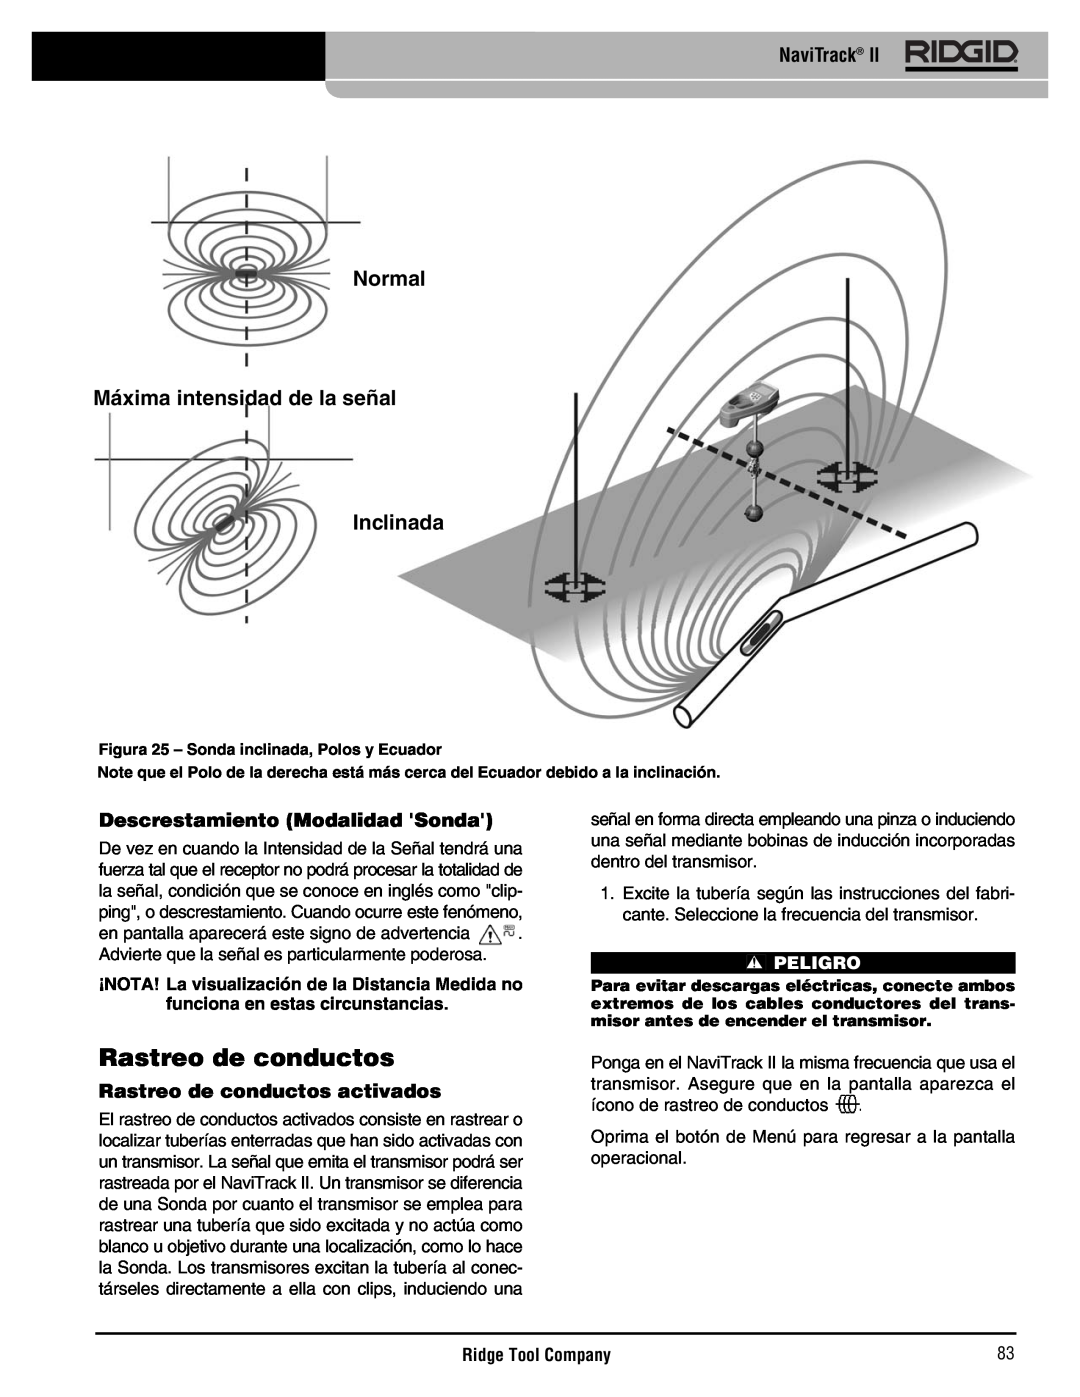 RIDGID Metal Detector manual Normal Máxima intensidad de la señal Inclinada, Rastreo de conductos activados, Peligro 